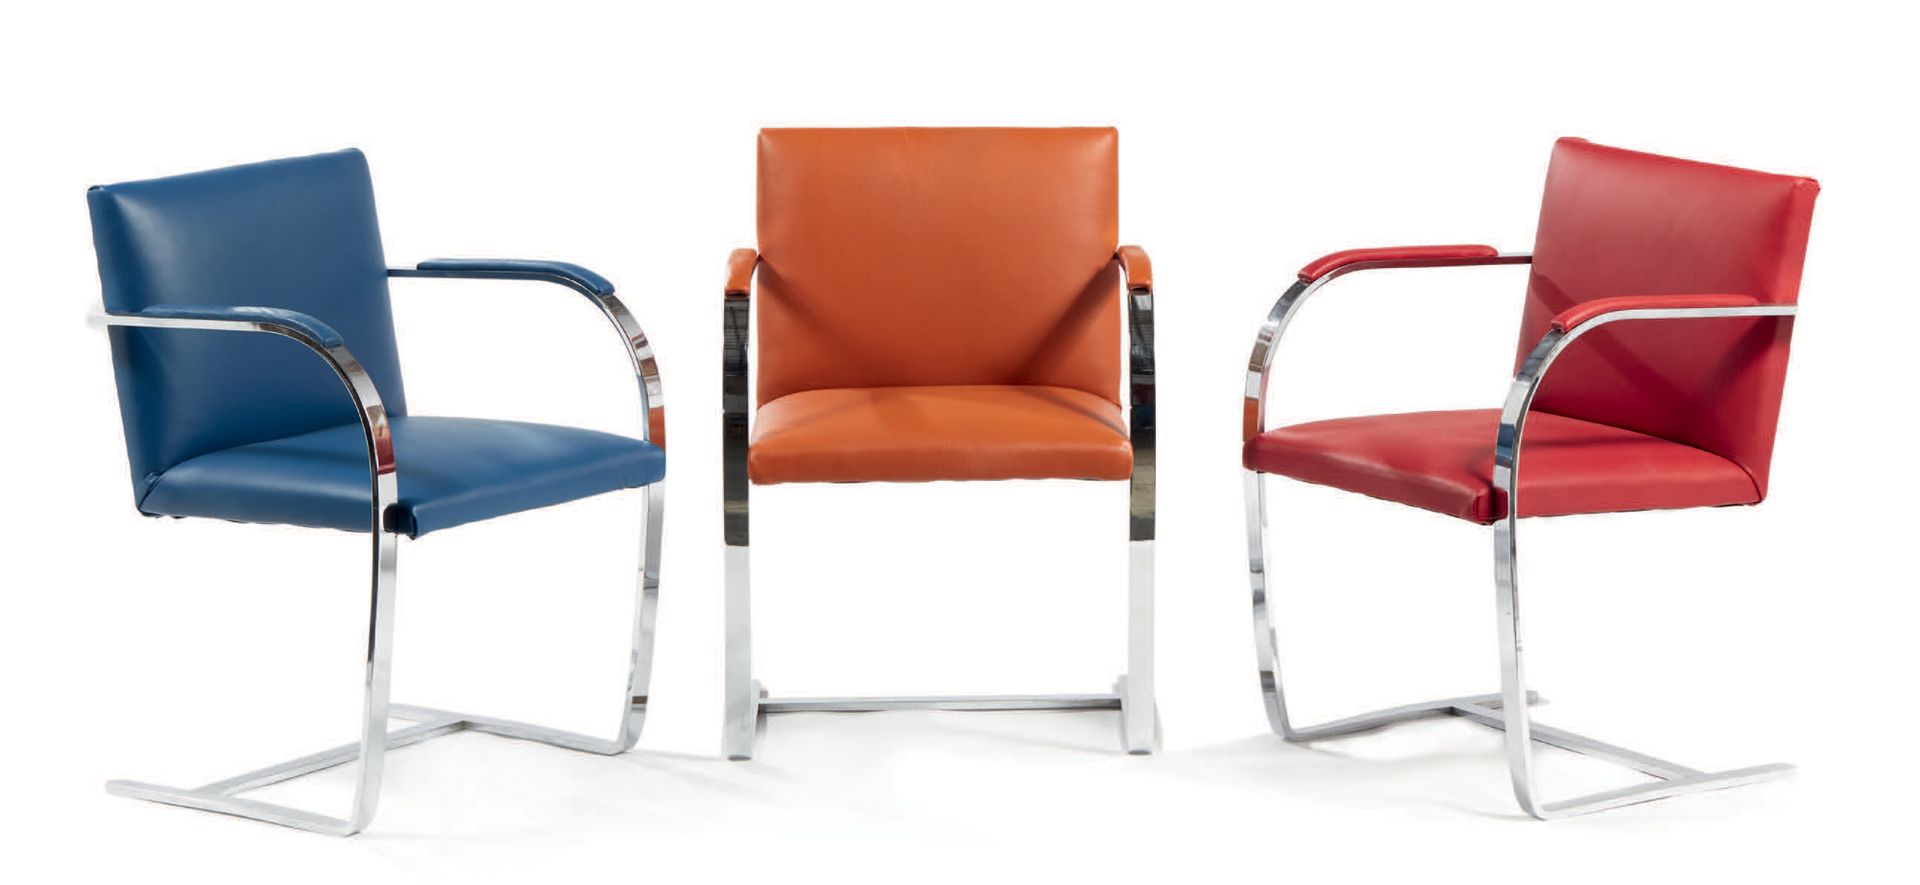 Ludwig Mies van der Rohe (1886-1969) 
一套三把扶手椅，型号为 "Brno"，镀铬金属框架，皮革装饰，红色、橙色和蓝色
Ed&hellip;